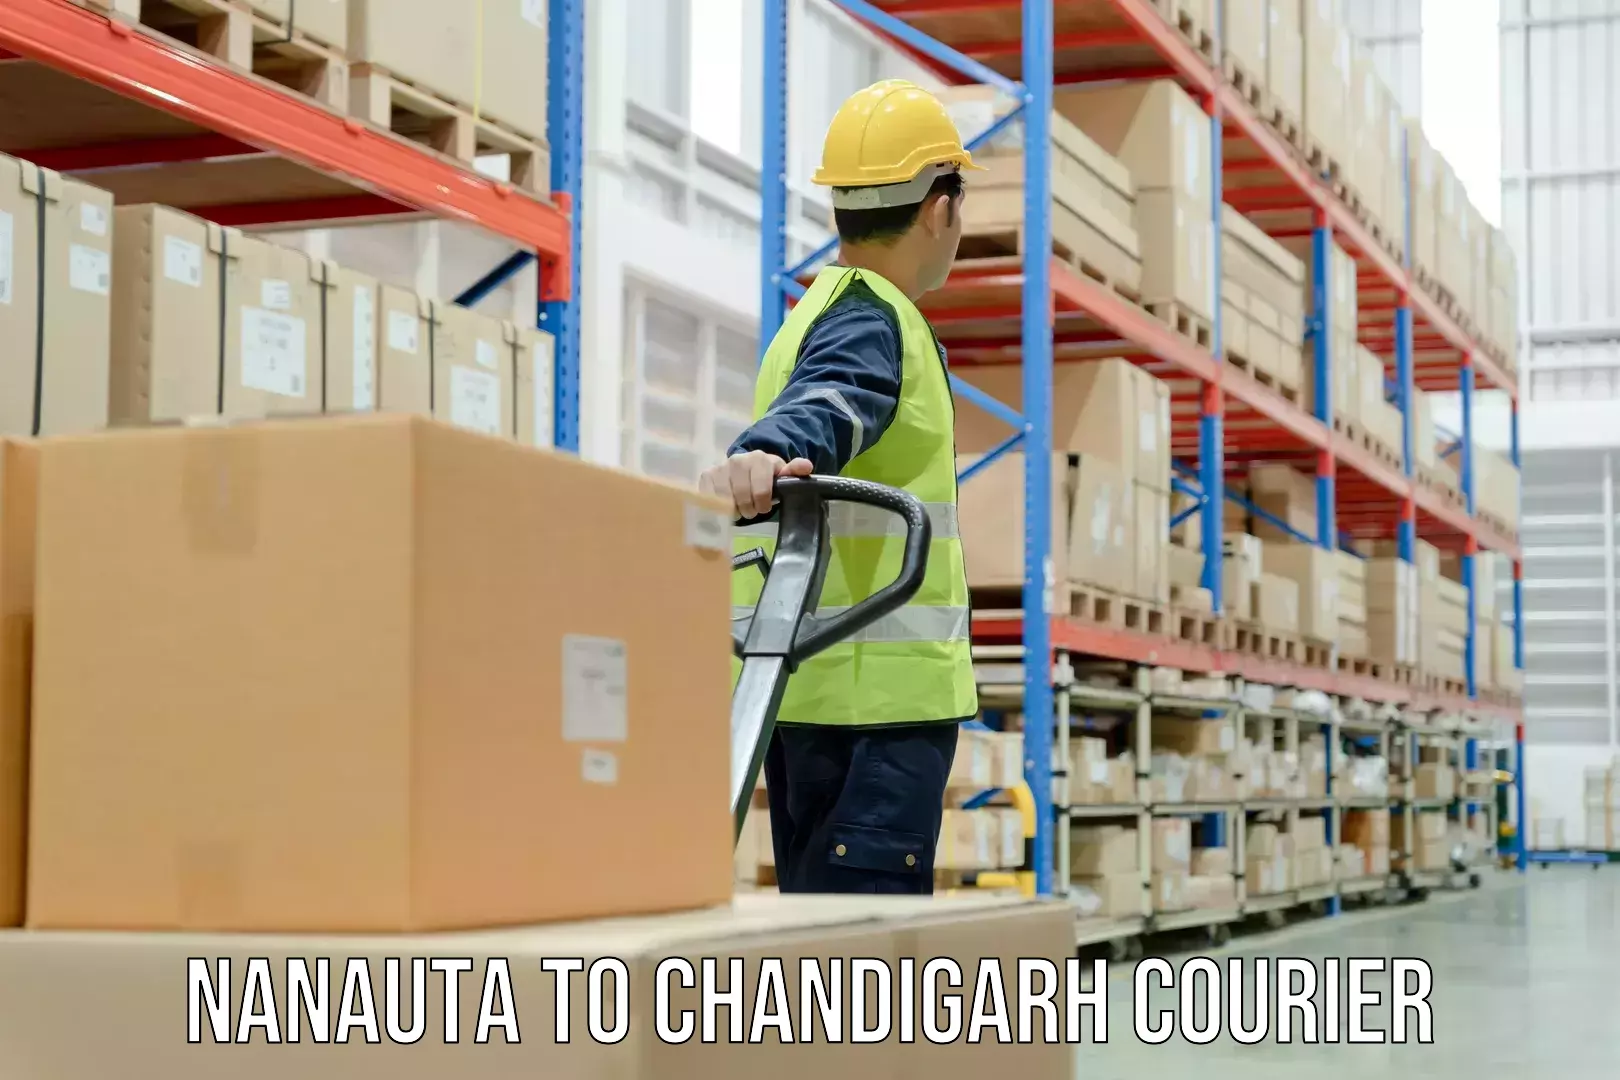 Holiday shipping services Nanauta to Panjab University Chandigarh